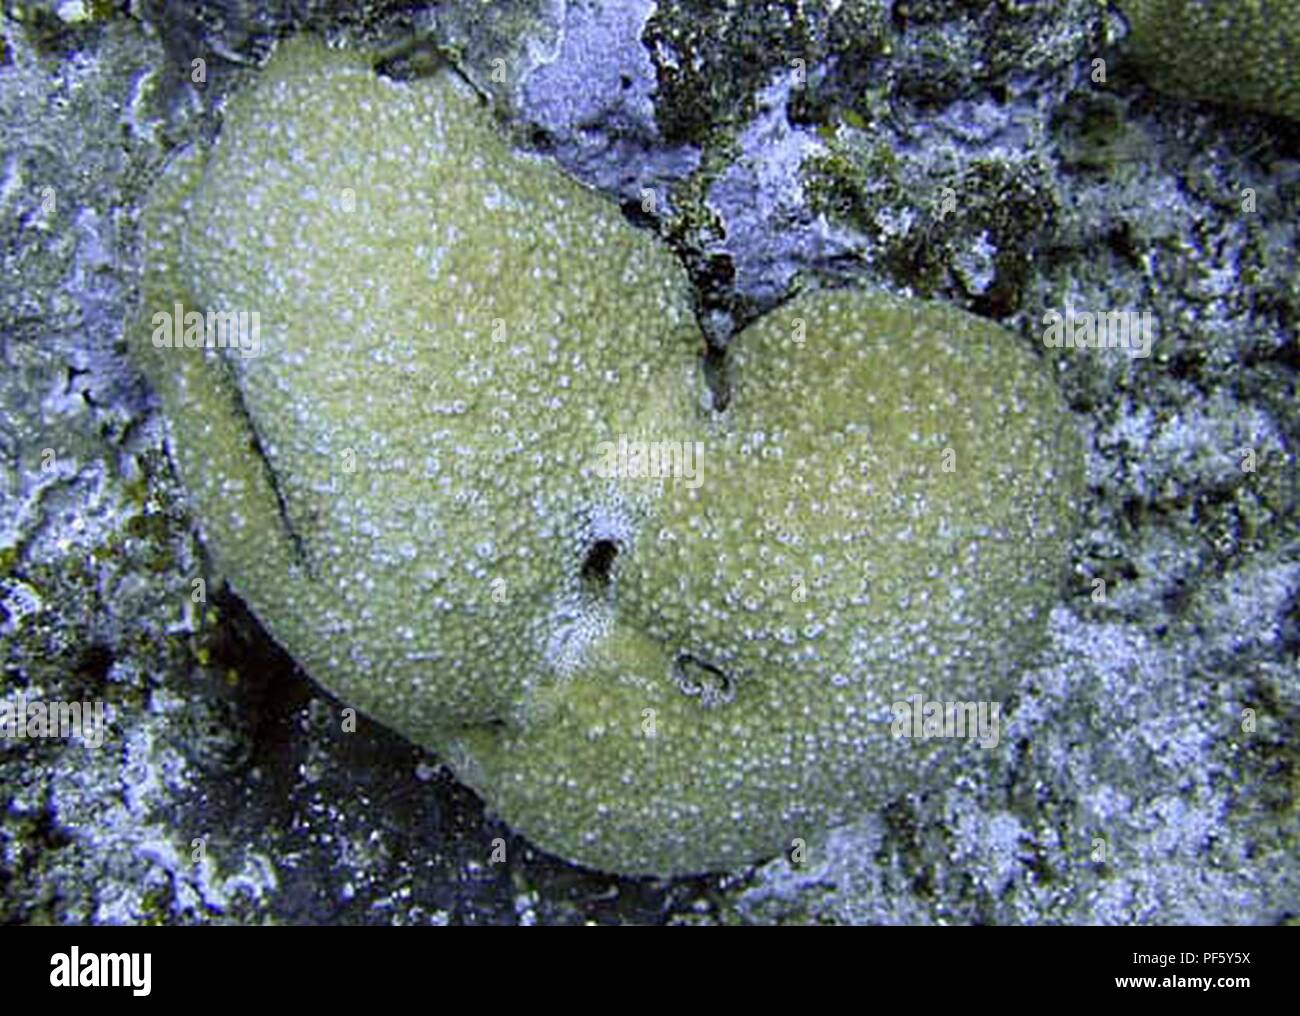 Astreopora myriophthalma Samoa Americana 2. Stock Photo